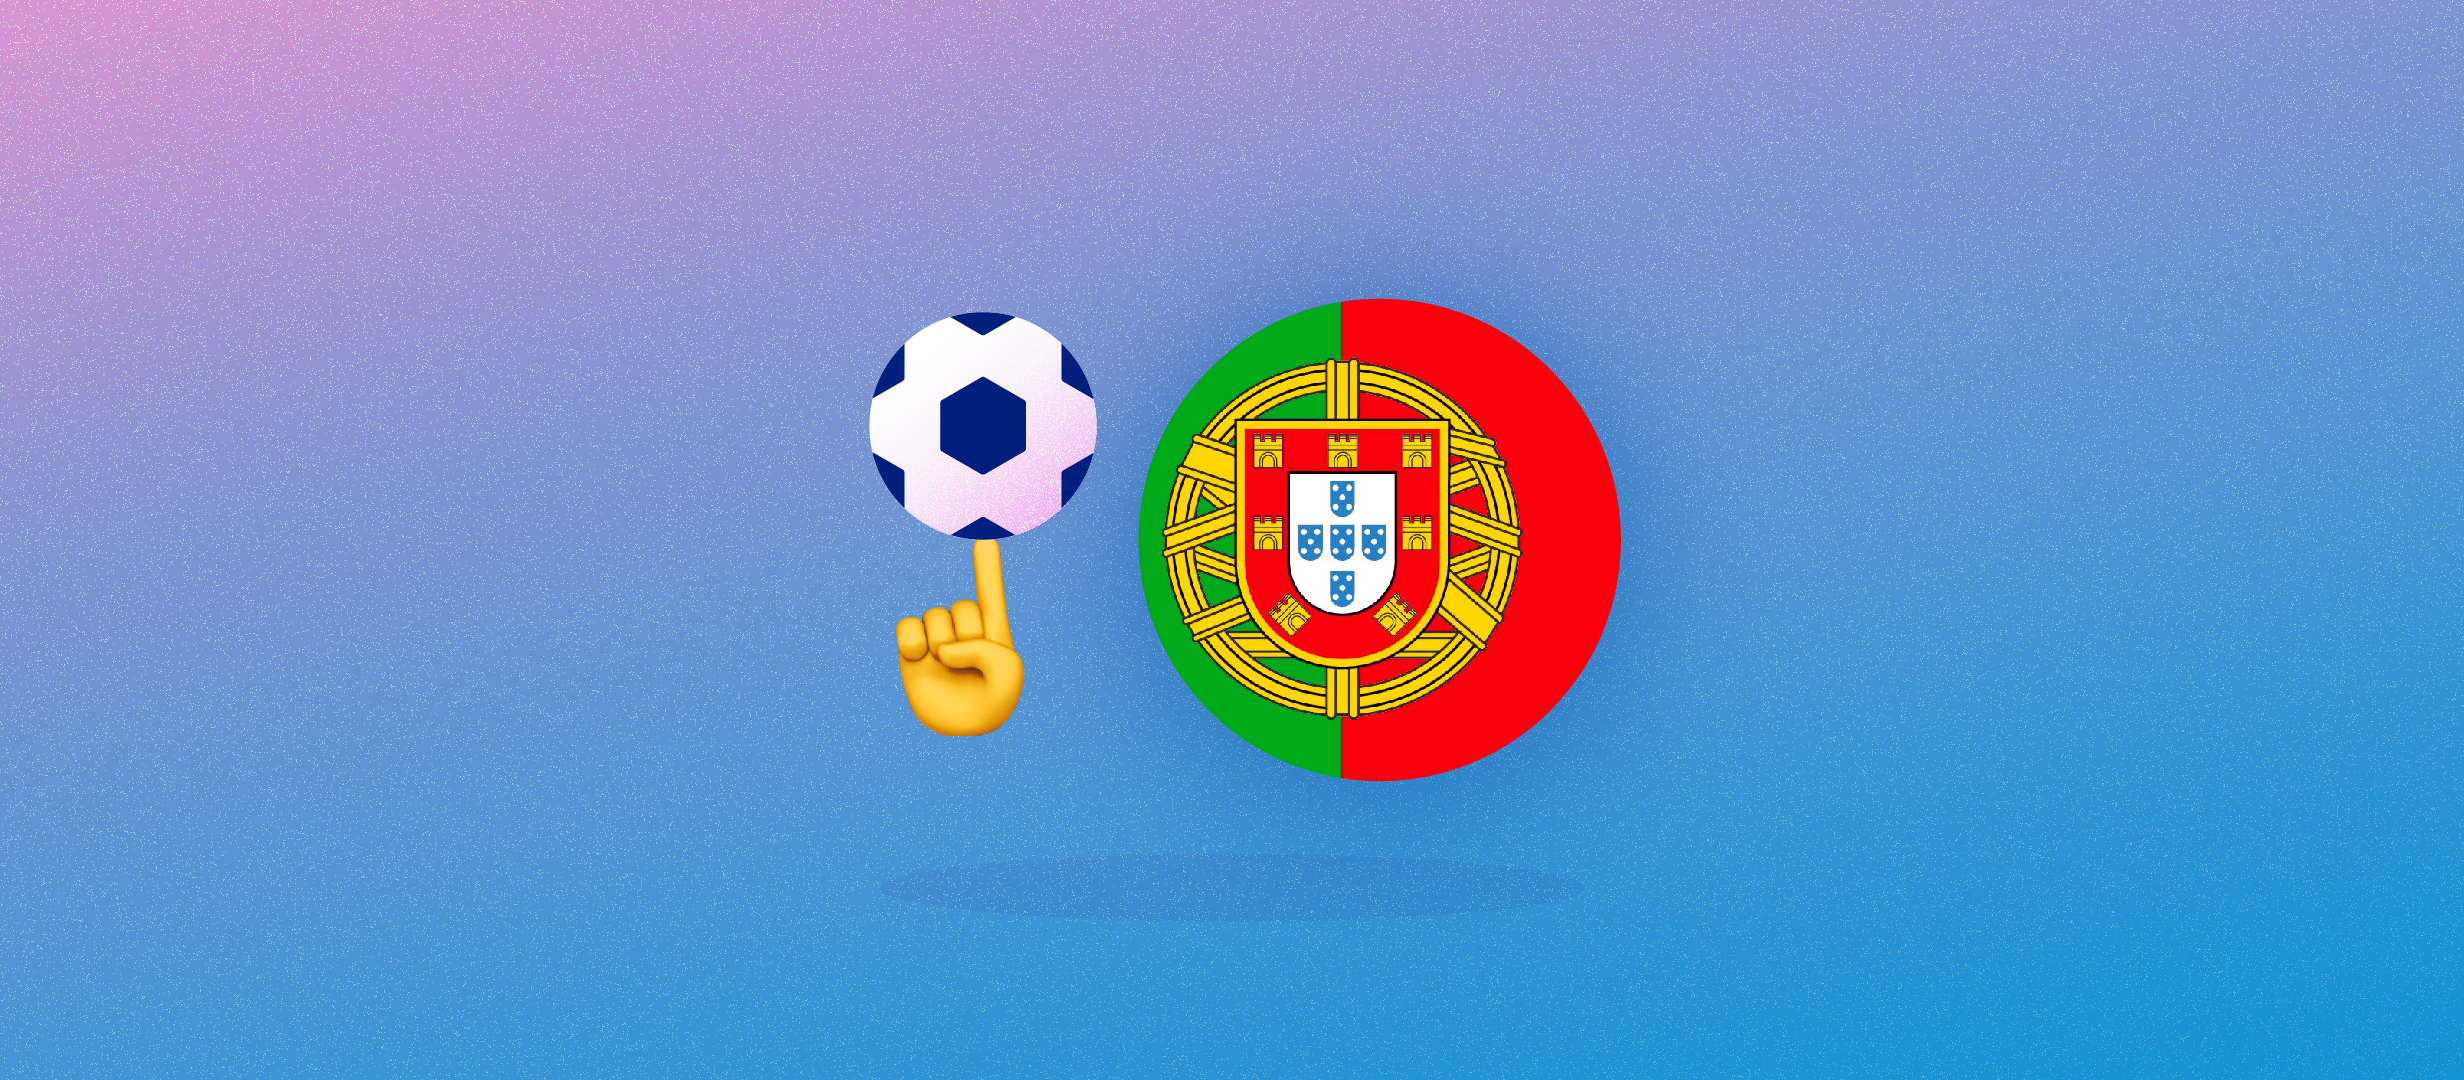 Пока Роналду в сборной Португалии, побед можно не ждать. На Евро нужна команда